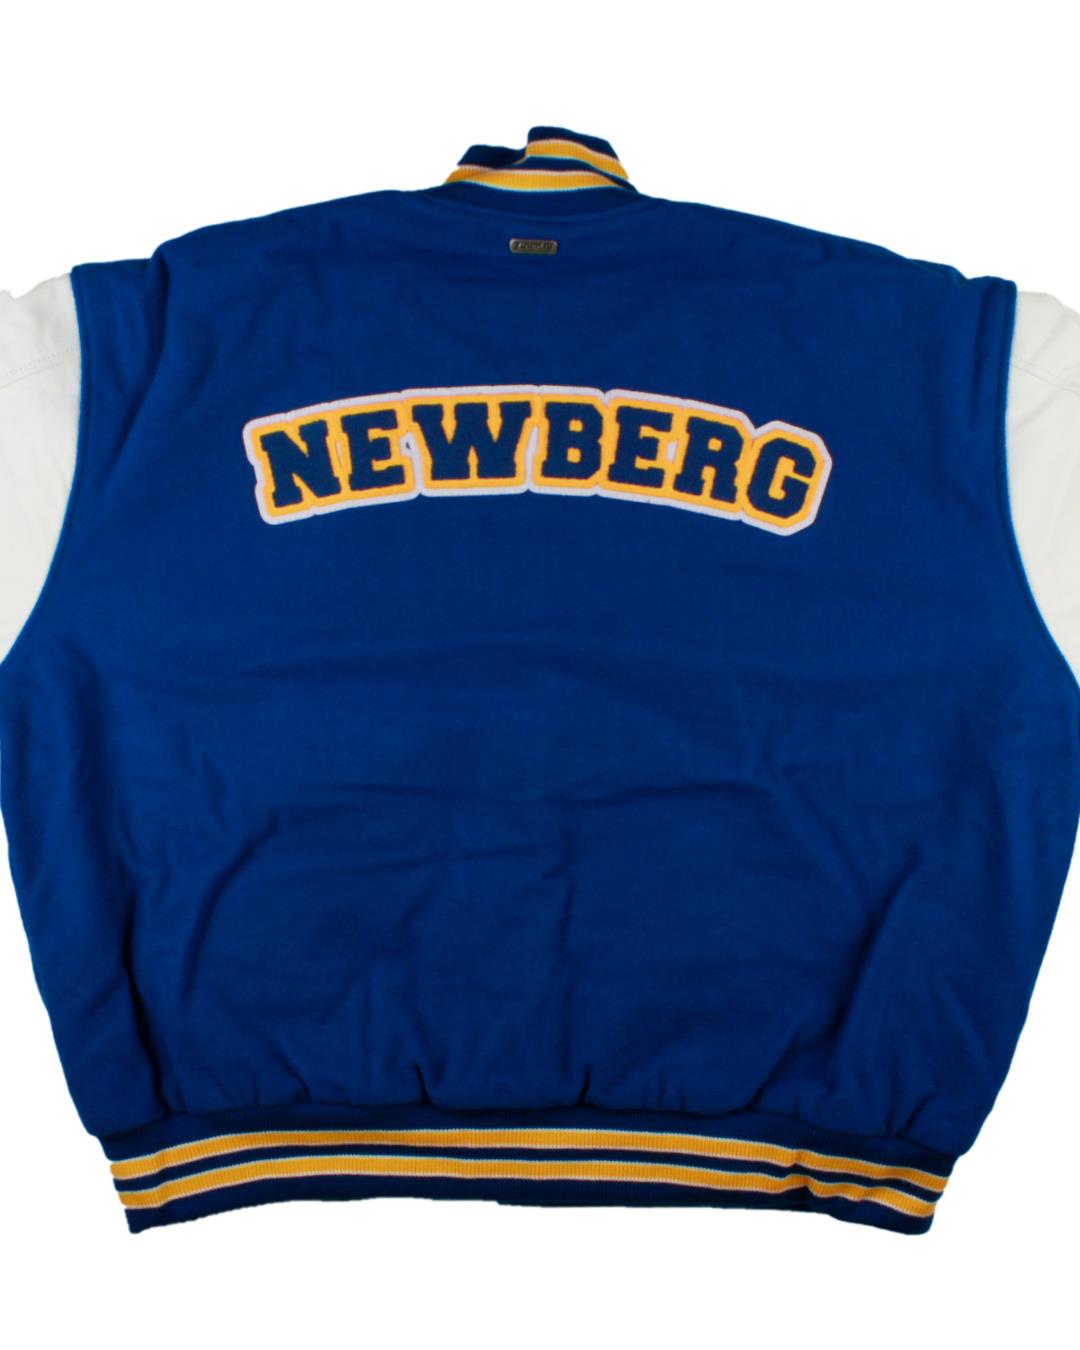 Newberg High School Letter Jacket, Newberg, OR - Back